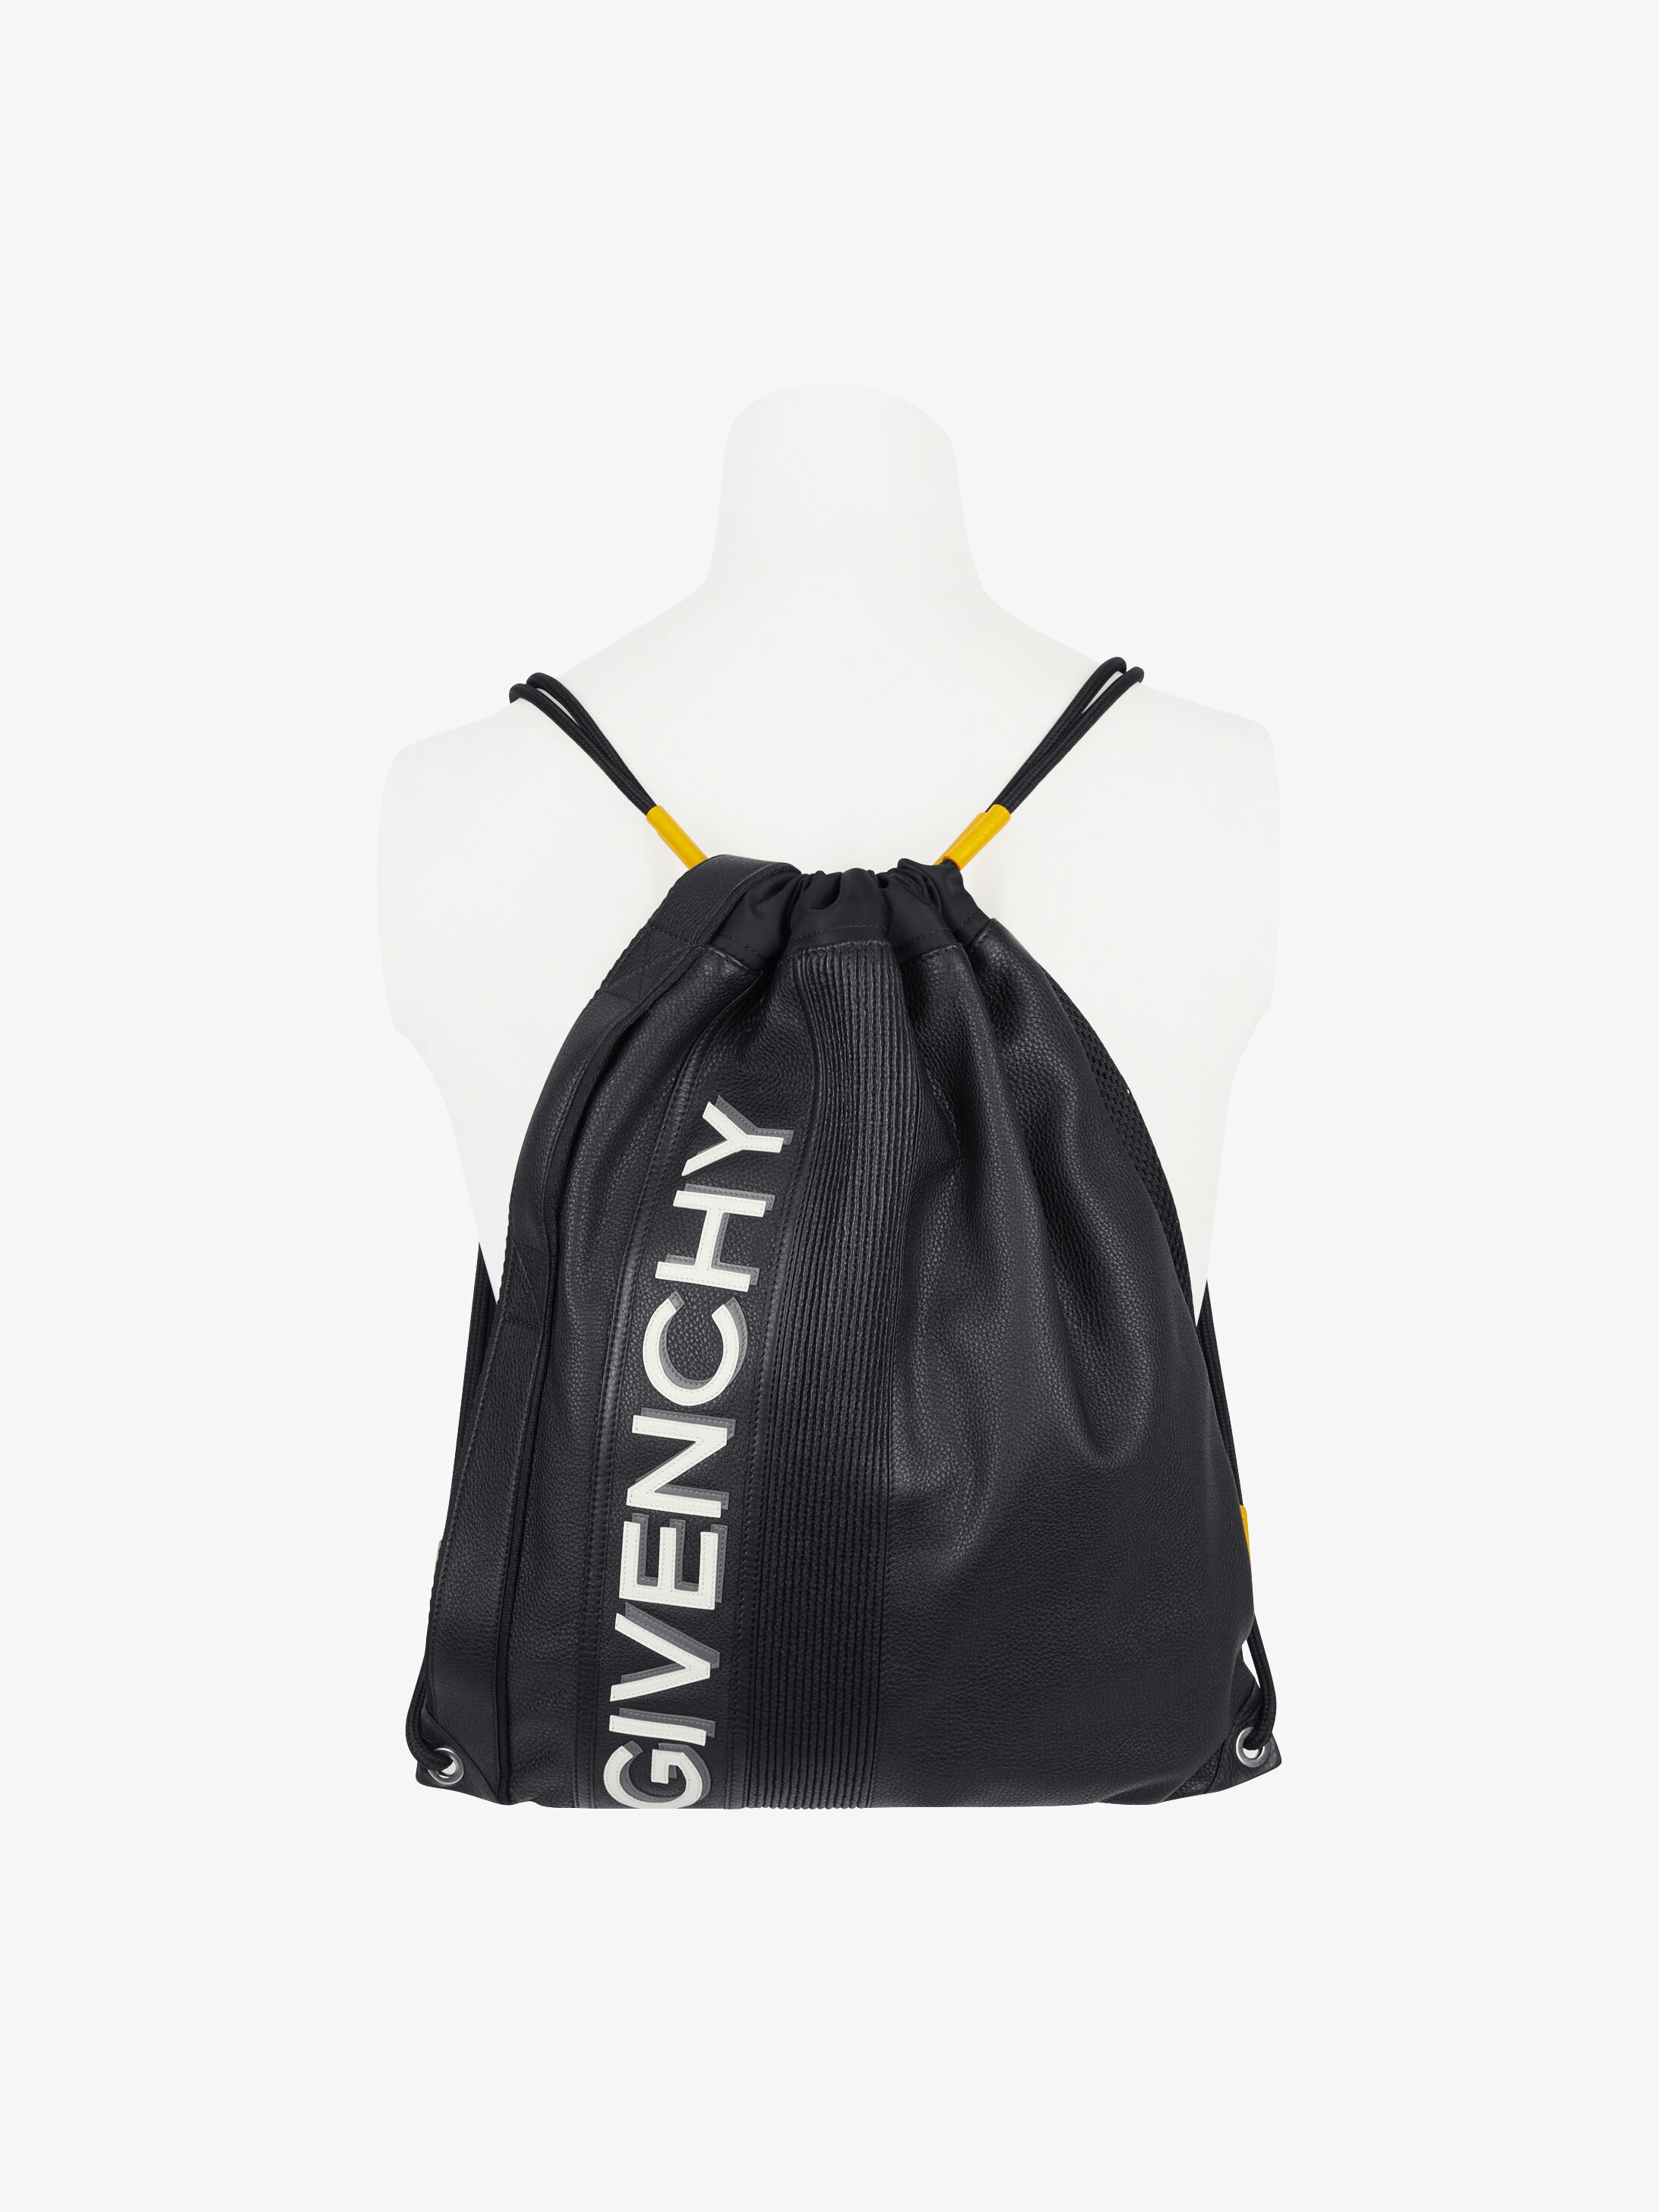 Reverse Givenchy drawstring bag 